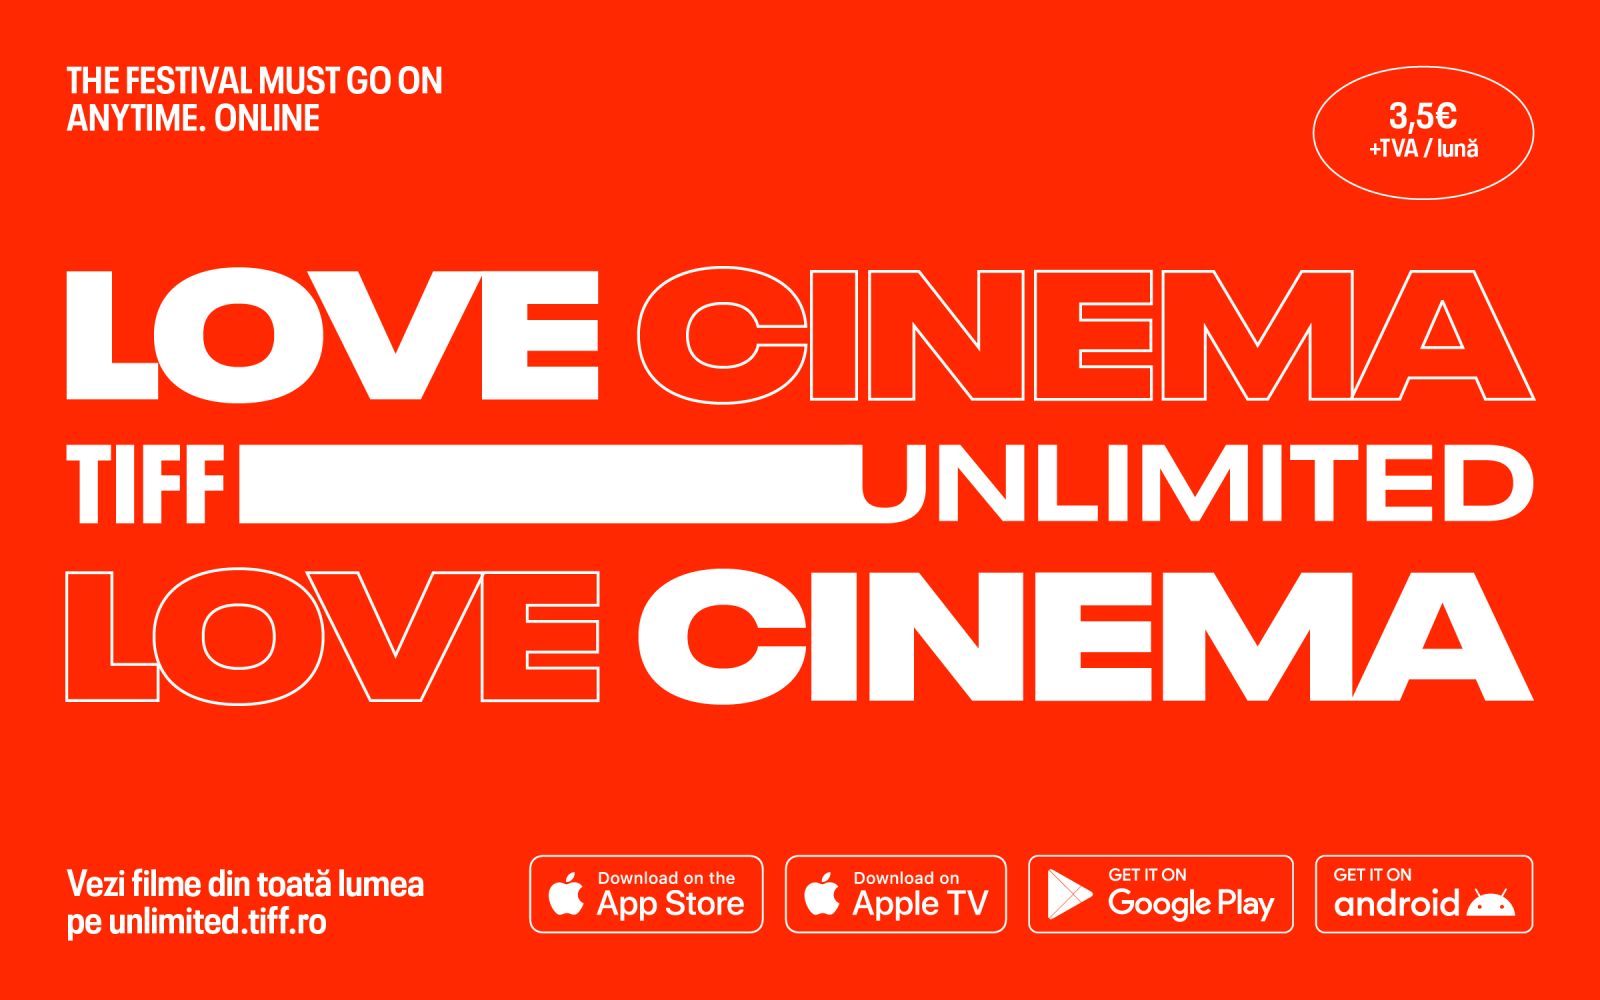 TIFF Unlimited - Love Cinema visual